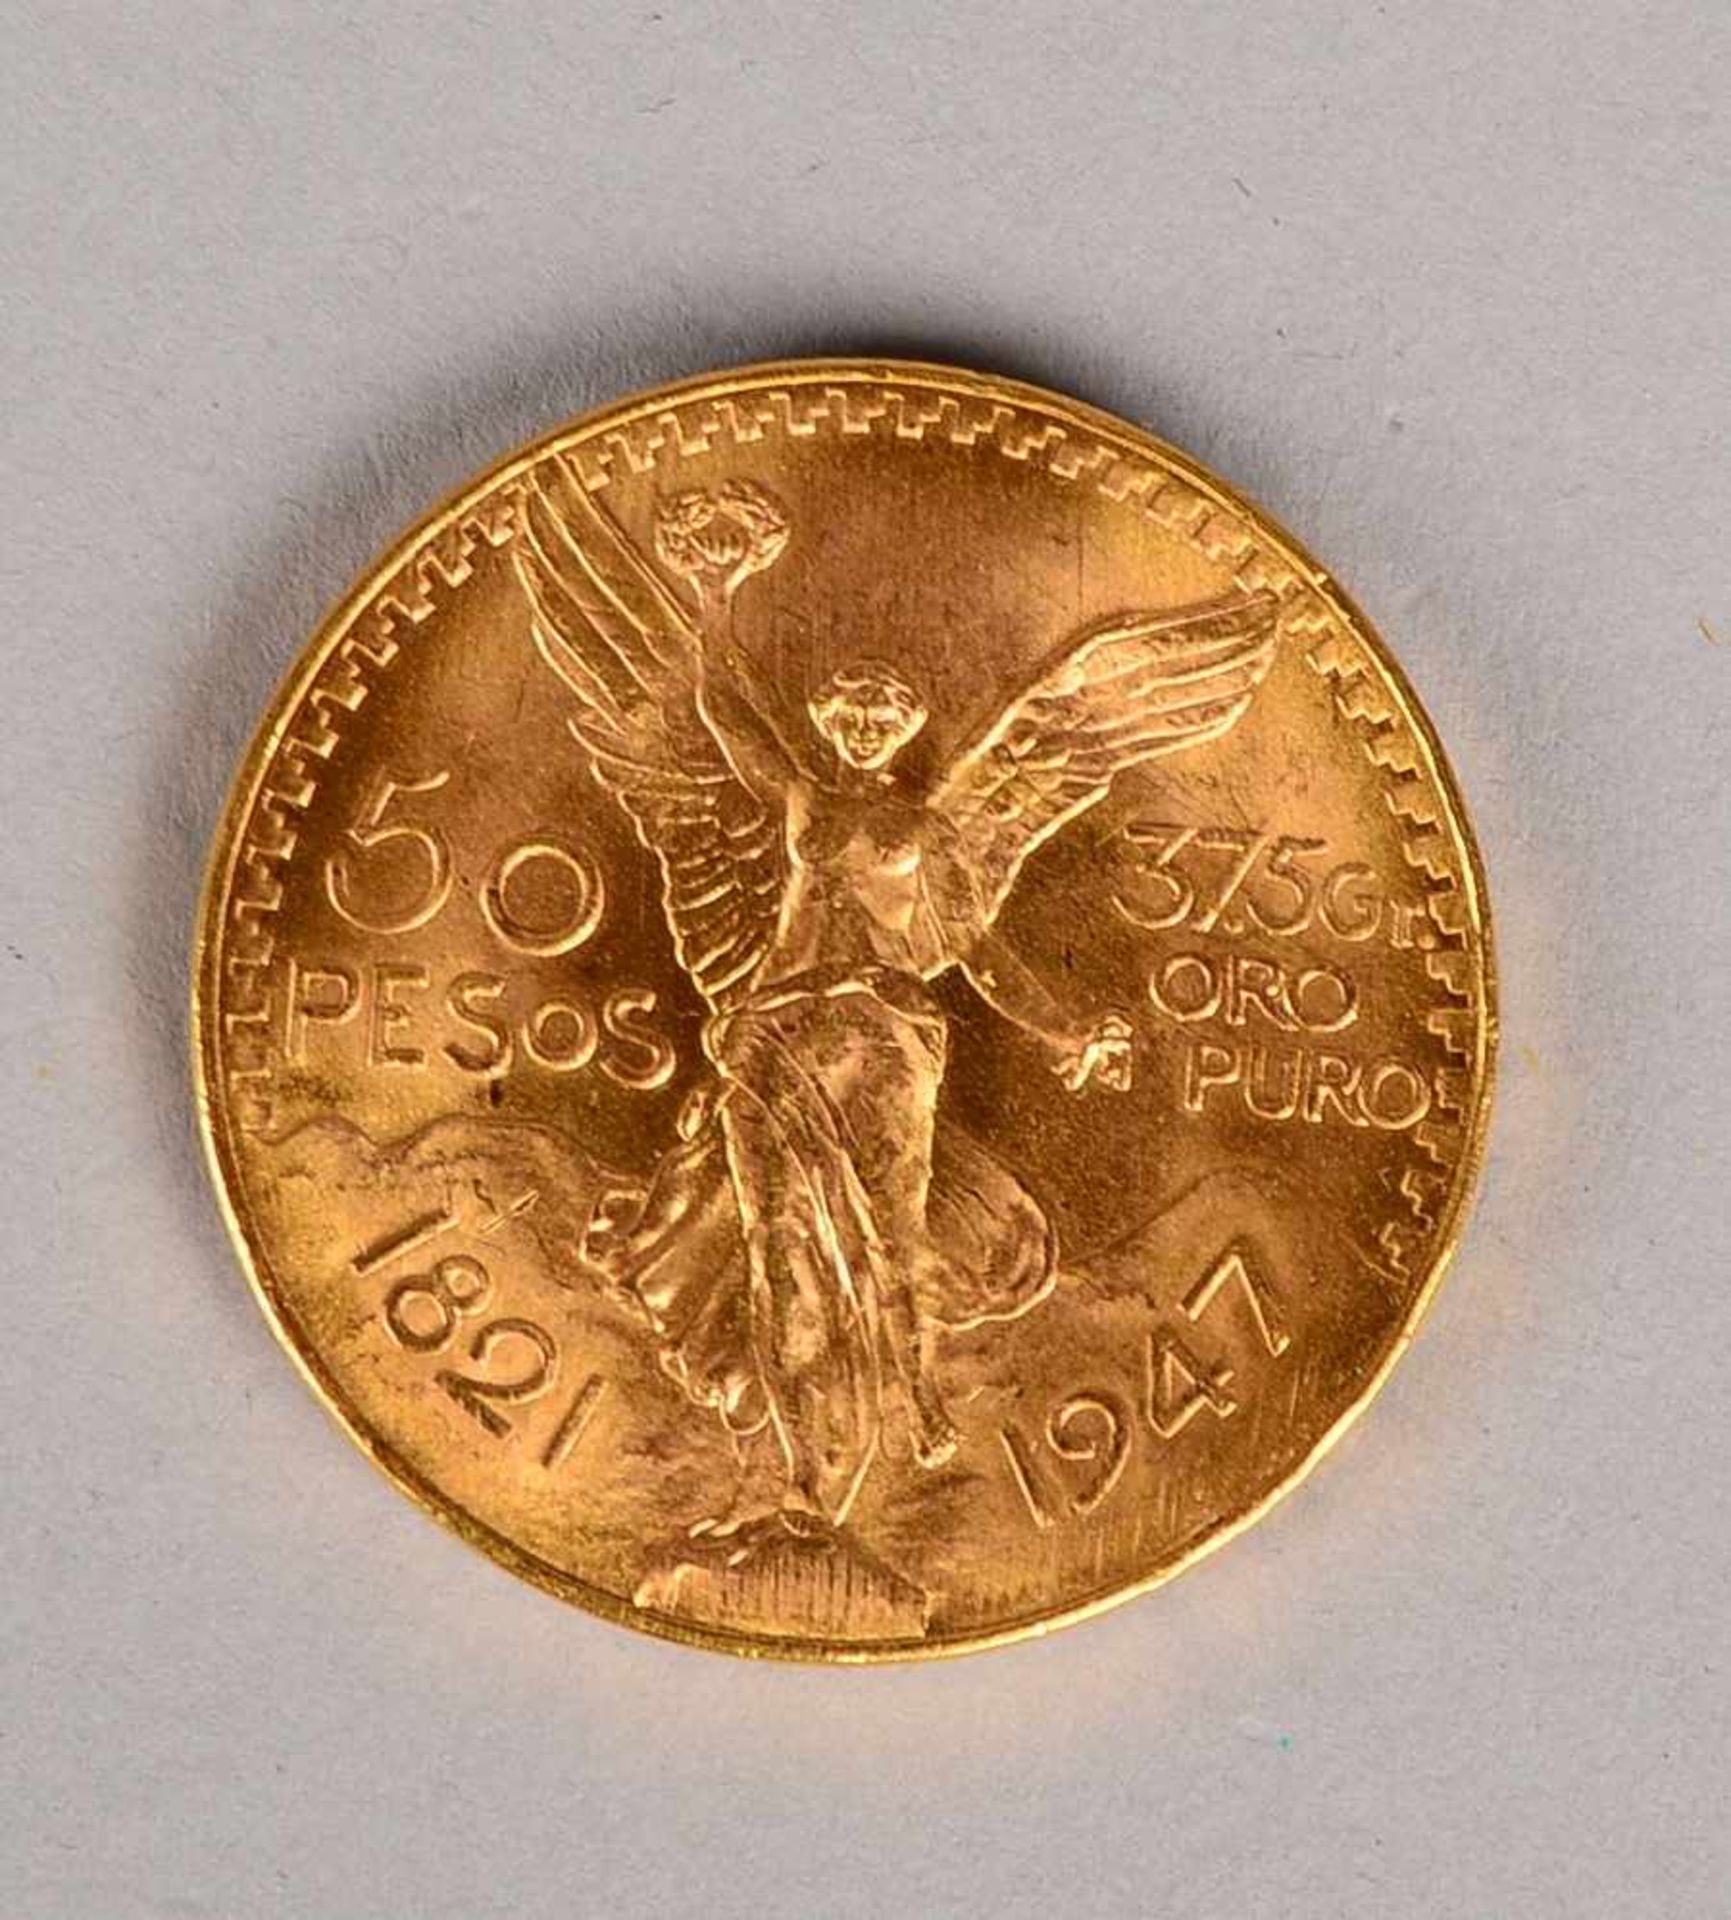 Goldmünze (Mexiko), '50 Pesos' - '1821 - 1947, Independencia y Libertad', im Etui; Gewicht 41,6 g ( - Bild 2 aus 2